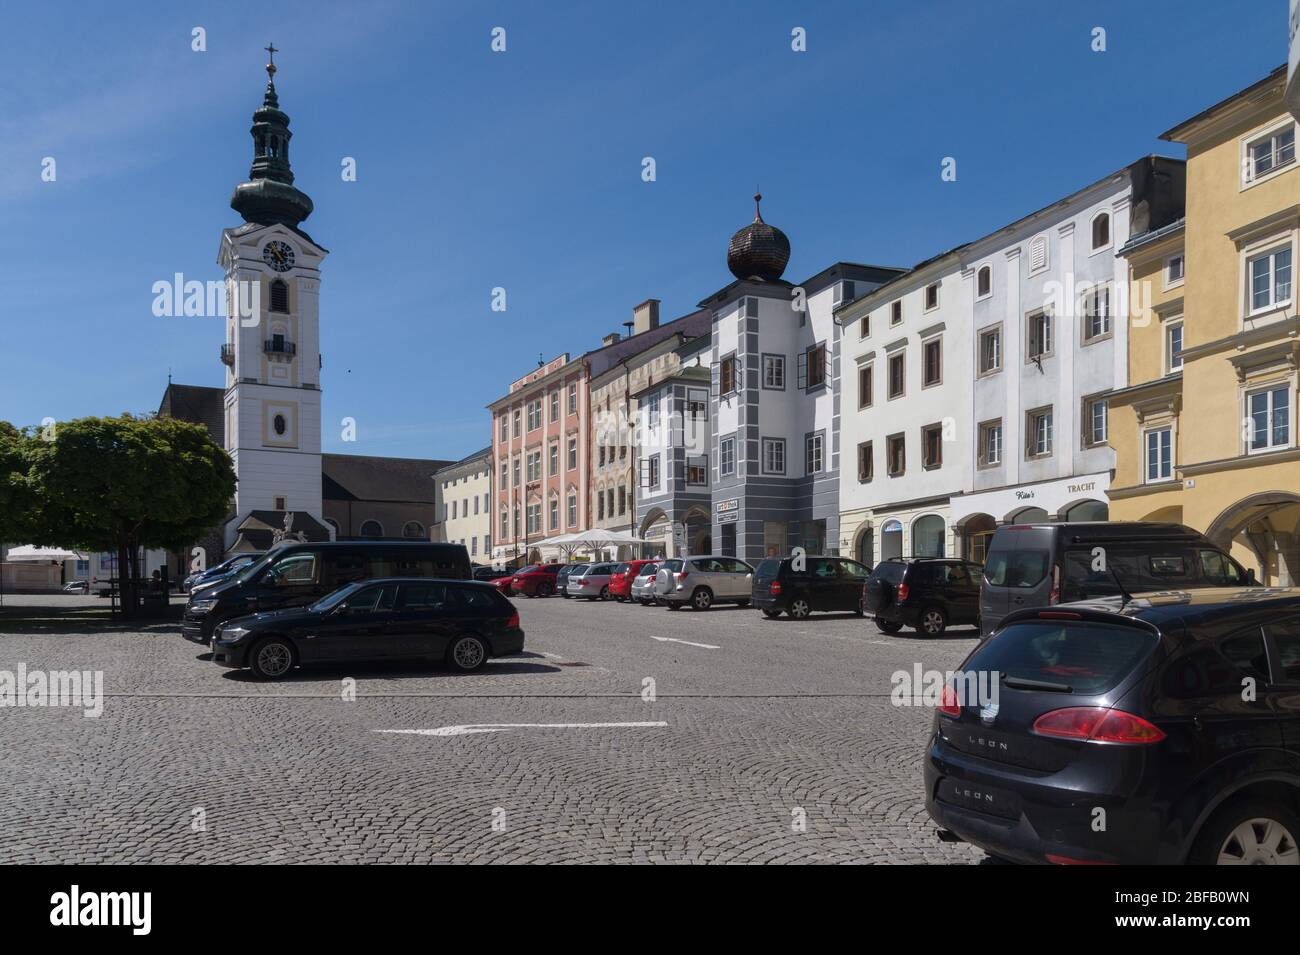 Freistadt, eine oberösterreichische Stadtgemeine mit ca. 8000 Einwohner im unteren Mühlviertel, Austria, Europa Foto de stock